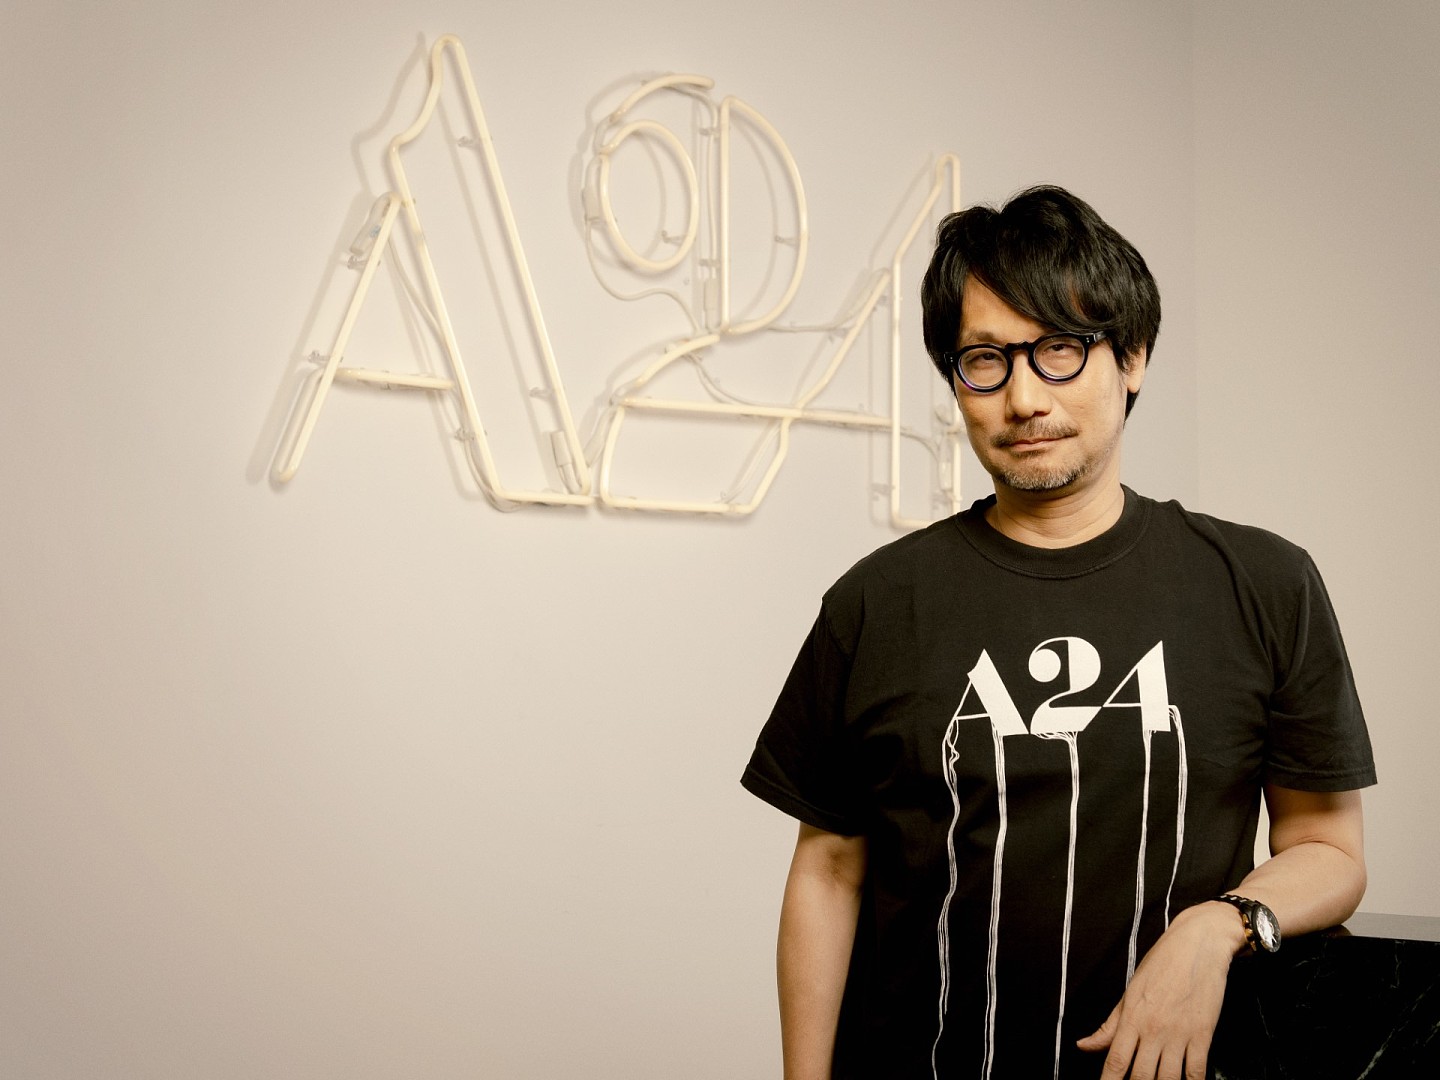 知名游戏制作人小岛秀夫宣布将和A24开发《死亡搁浅》真人电影 - 2